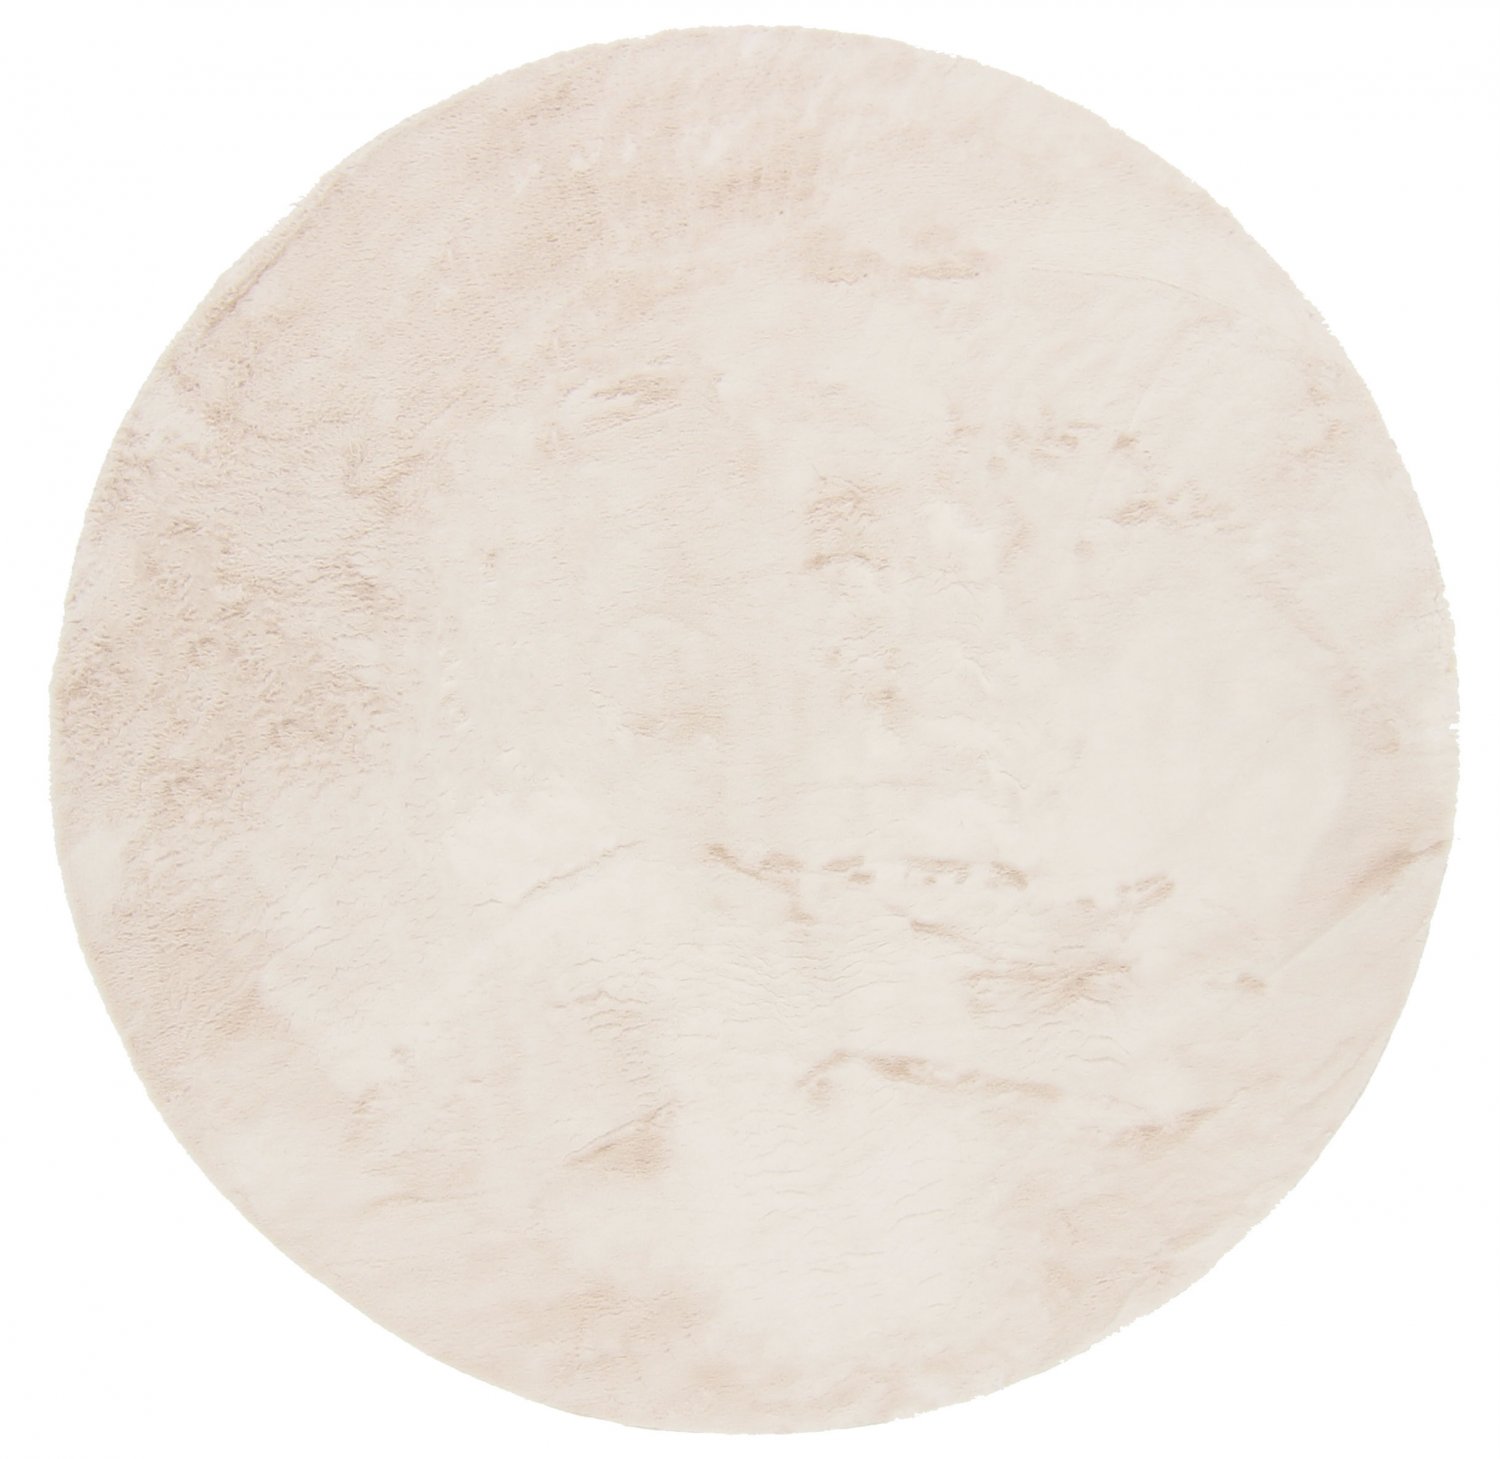 Tappeti rotondi - Aranga Super Soft Fur (beige)